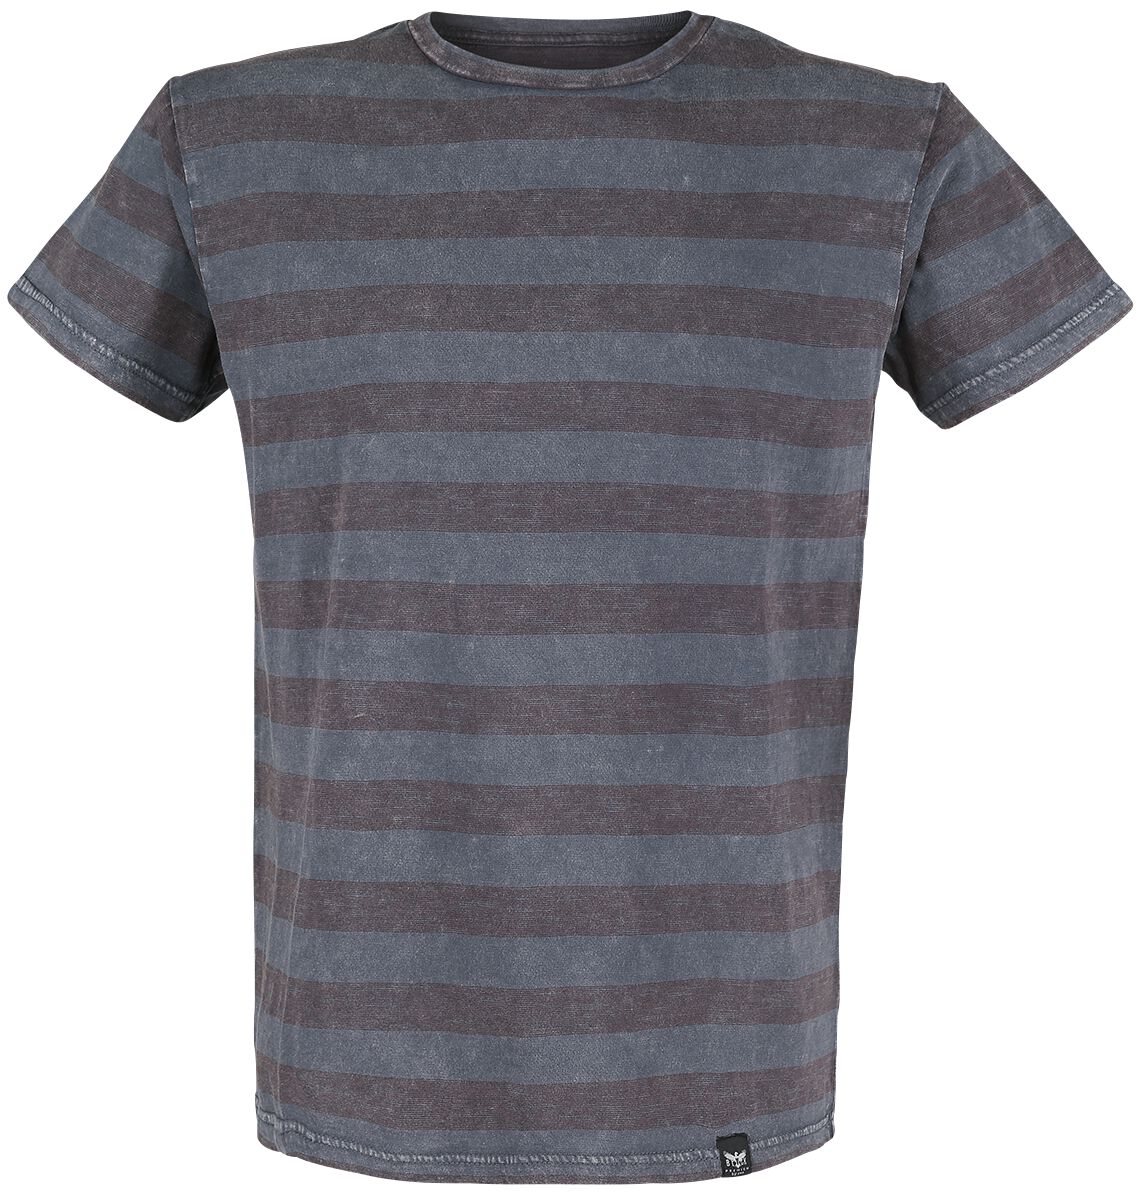 Black Premium by EMP T-Shirt - graues T-Shirt mit Querstreifen und Rundhalsausschnitt - S bis 5XL - für Männer - Größe 3XL - grau